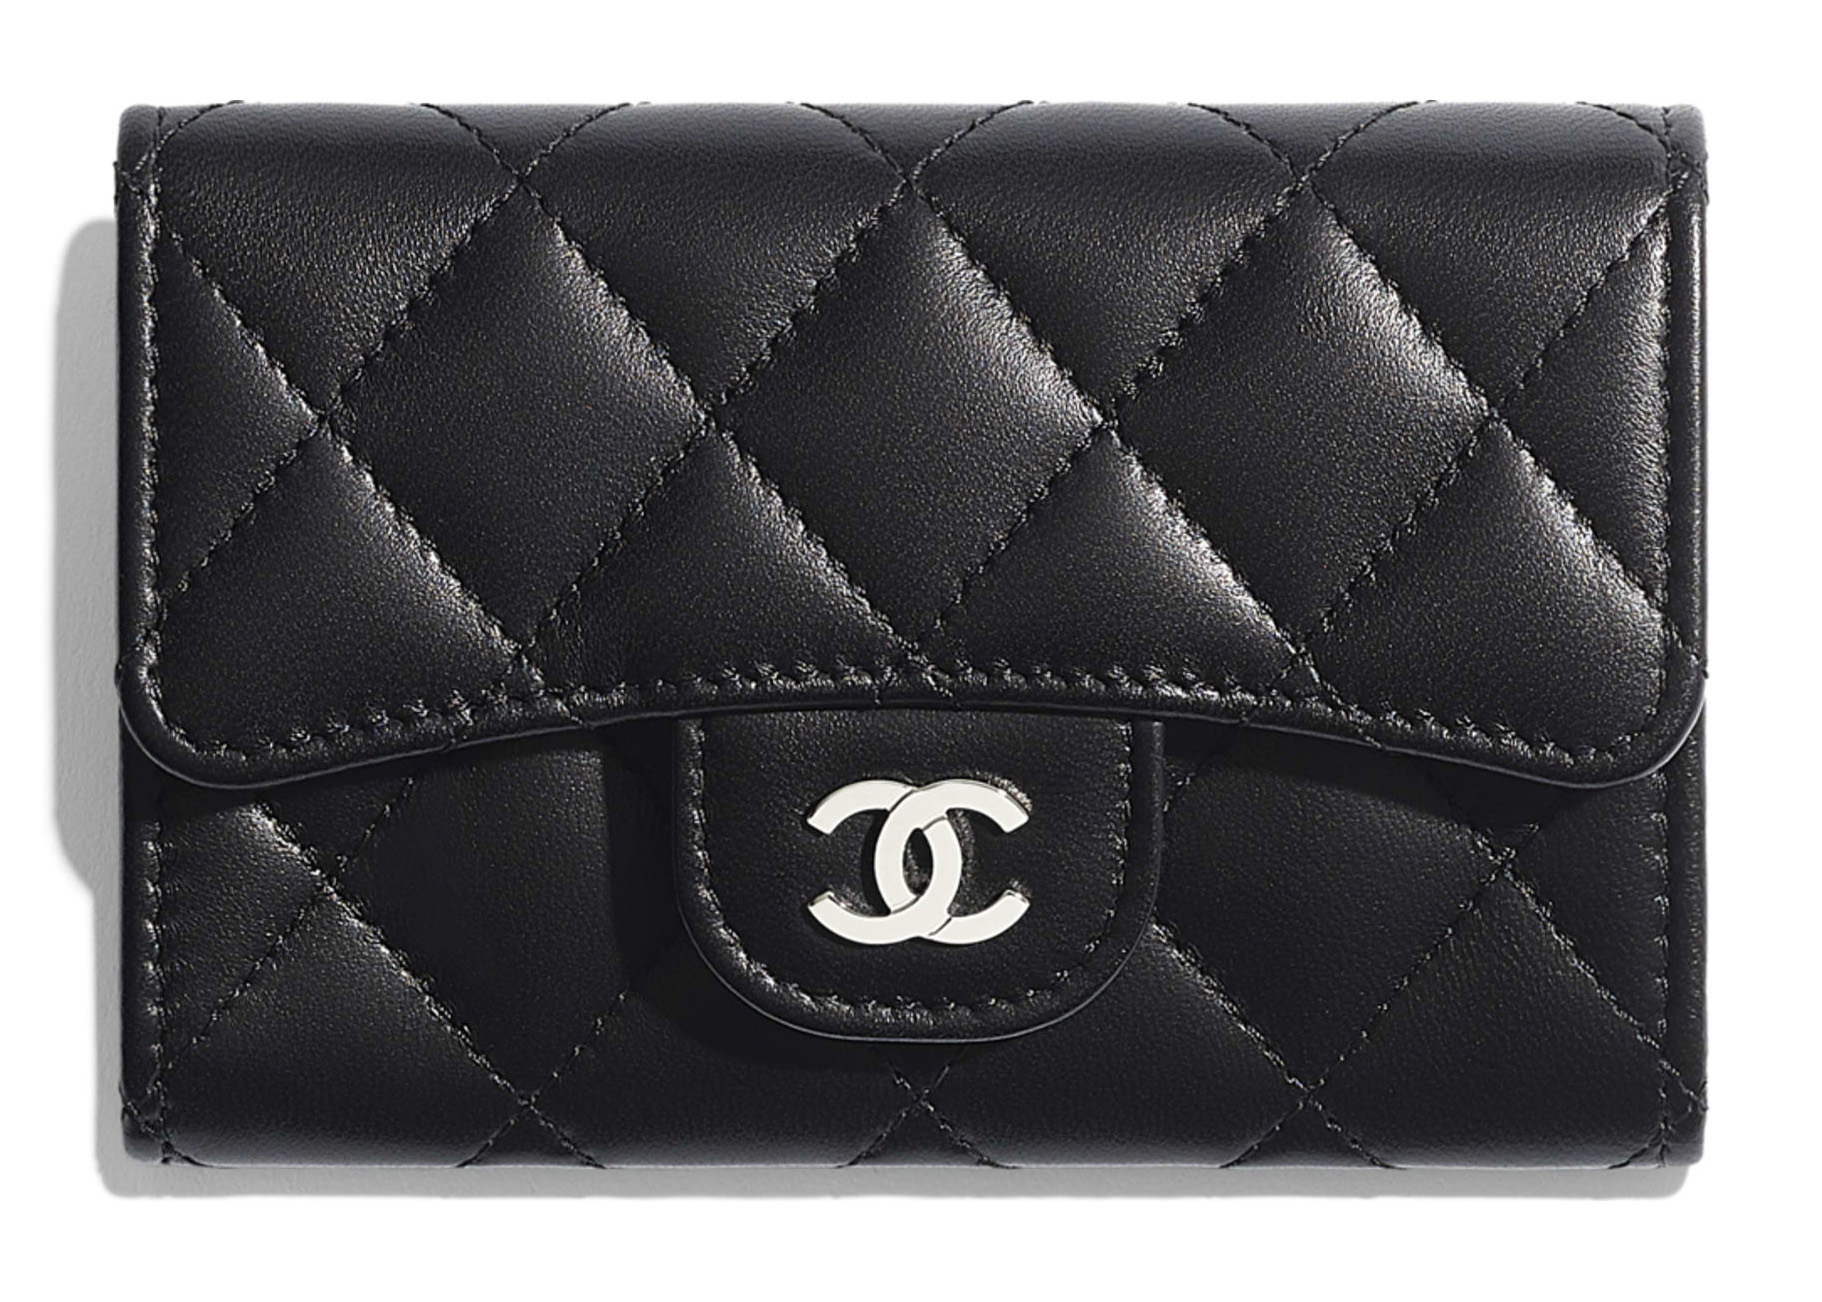 Card Holder Classic Chanel THU MUA ĐỒ HIỆU  Mua Hàng Hiệu Toàn Quốc Giá  Cao